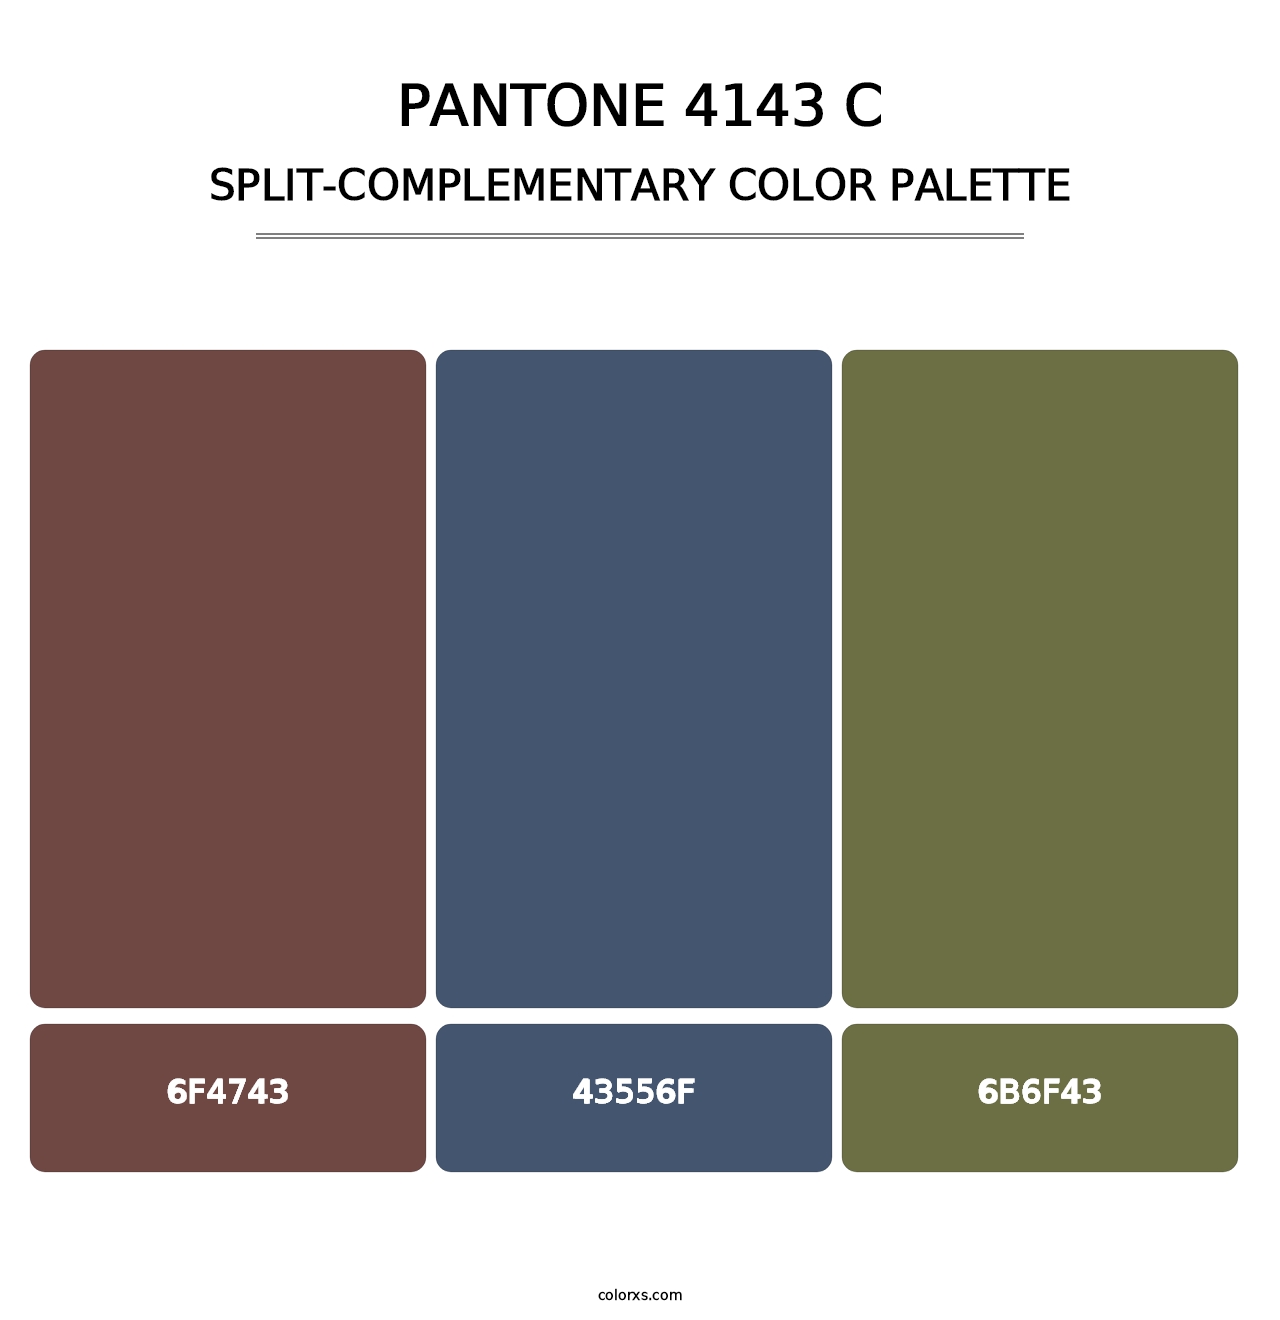 PANTONE 4143 C - Split-Complementary Color Palette